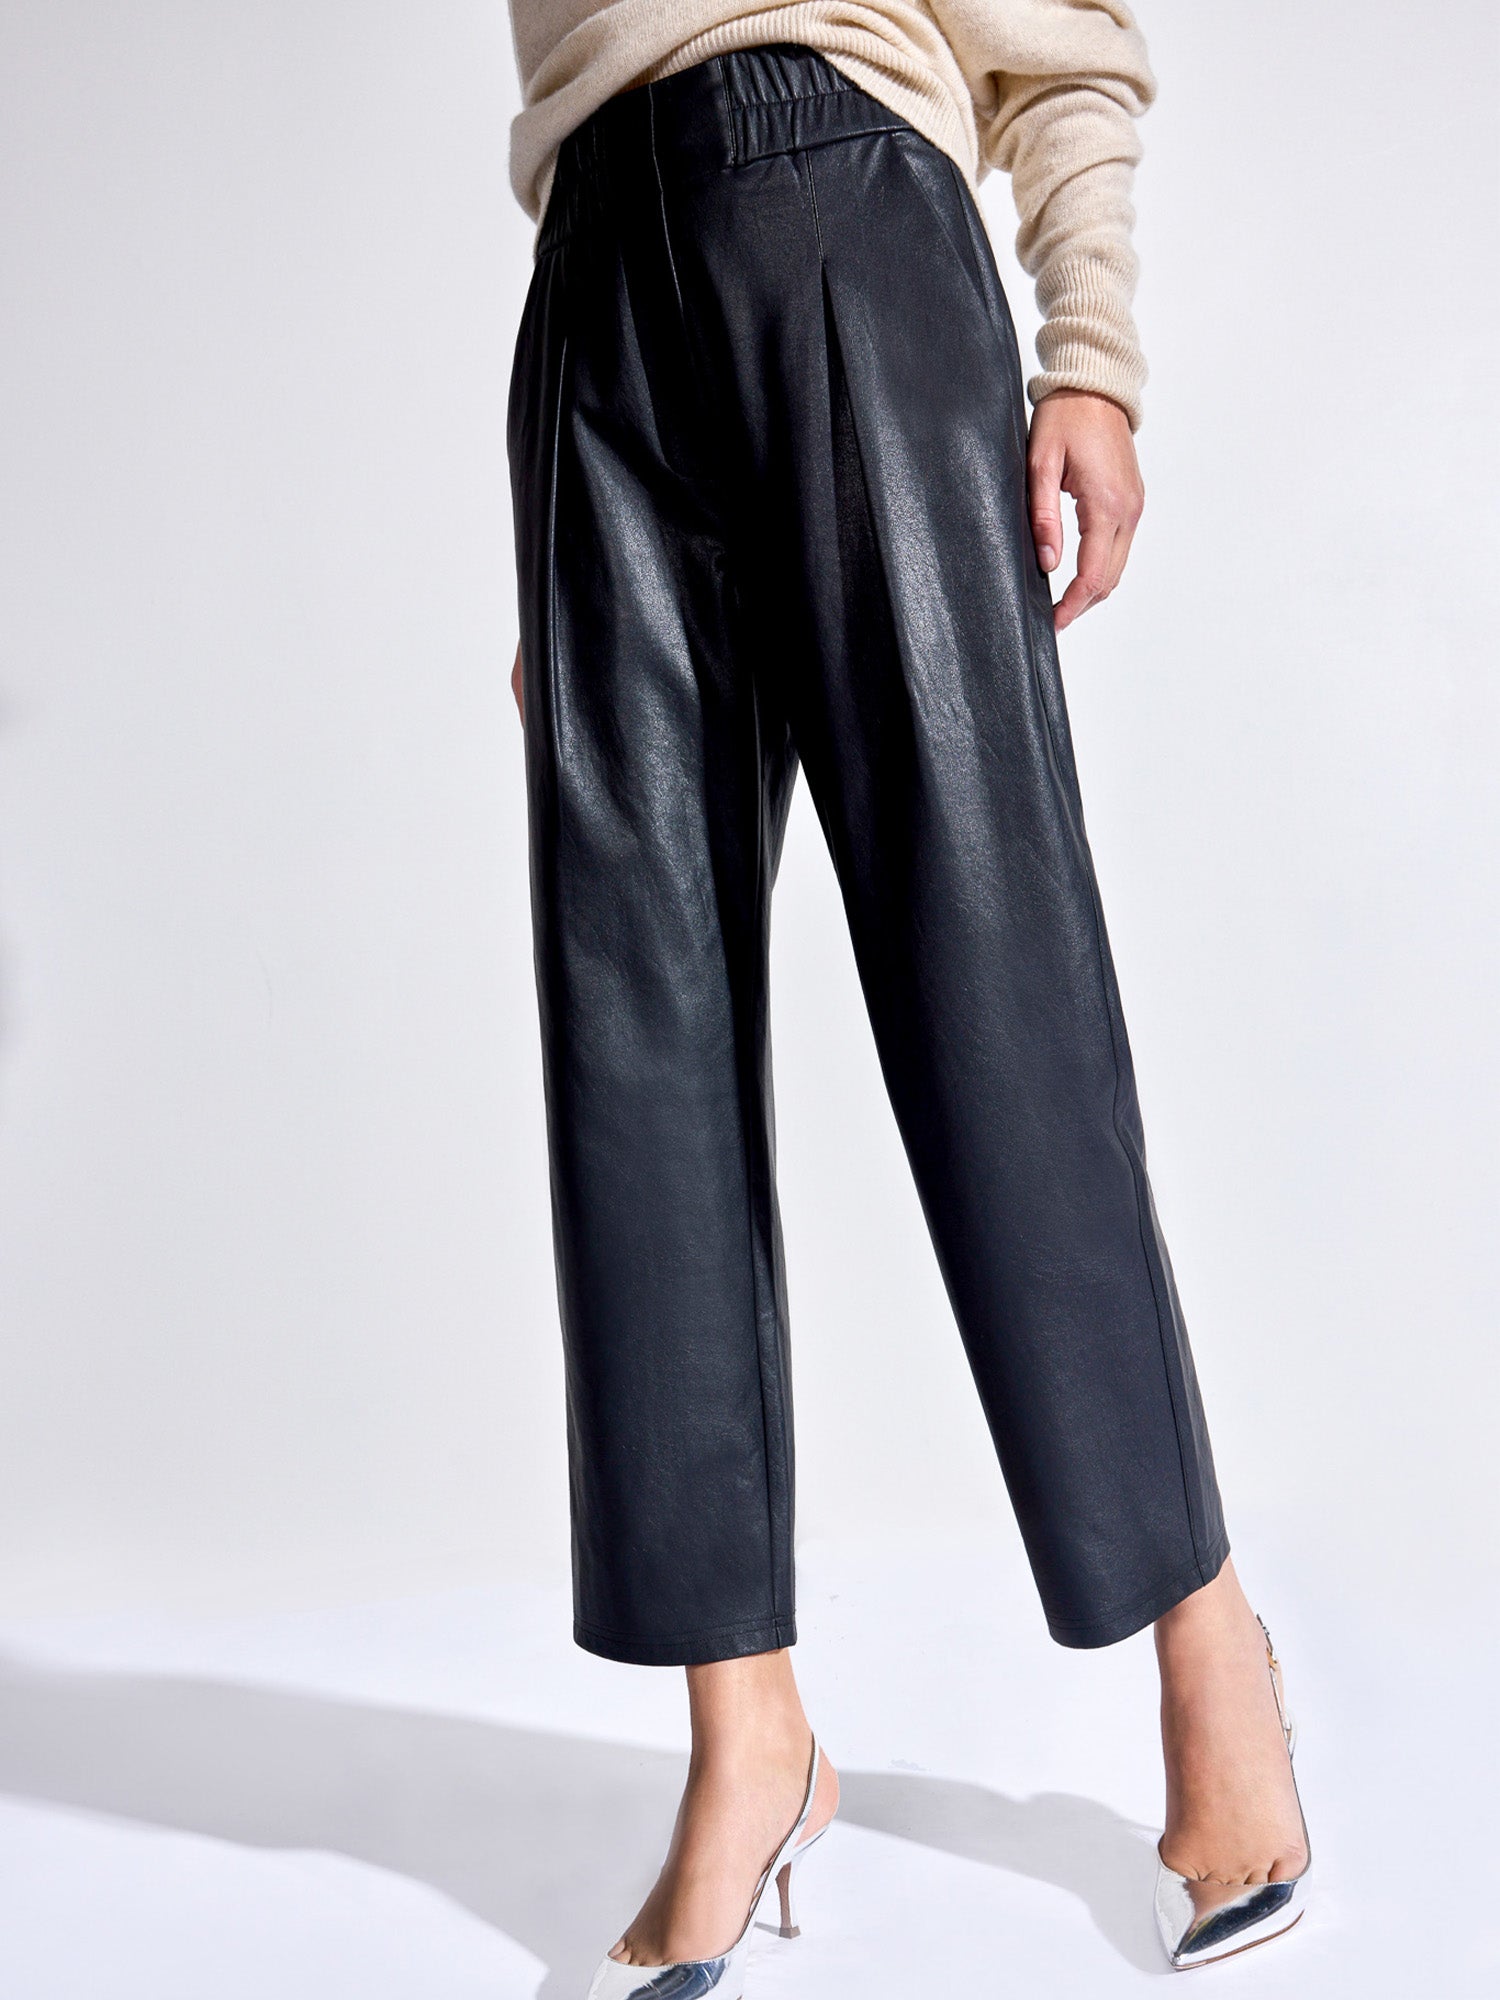 Pleated waistband wide-leg dress pant, Twik, Shop Women%u2019s Wide-Leg  Pants Online in Canada